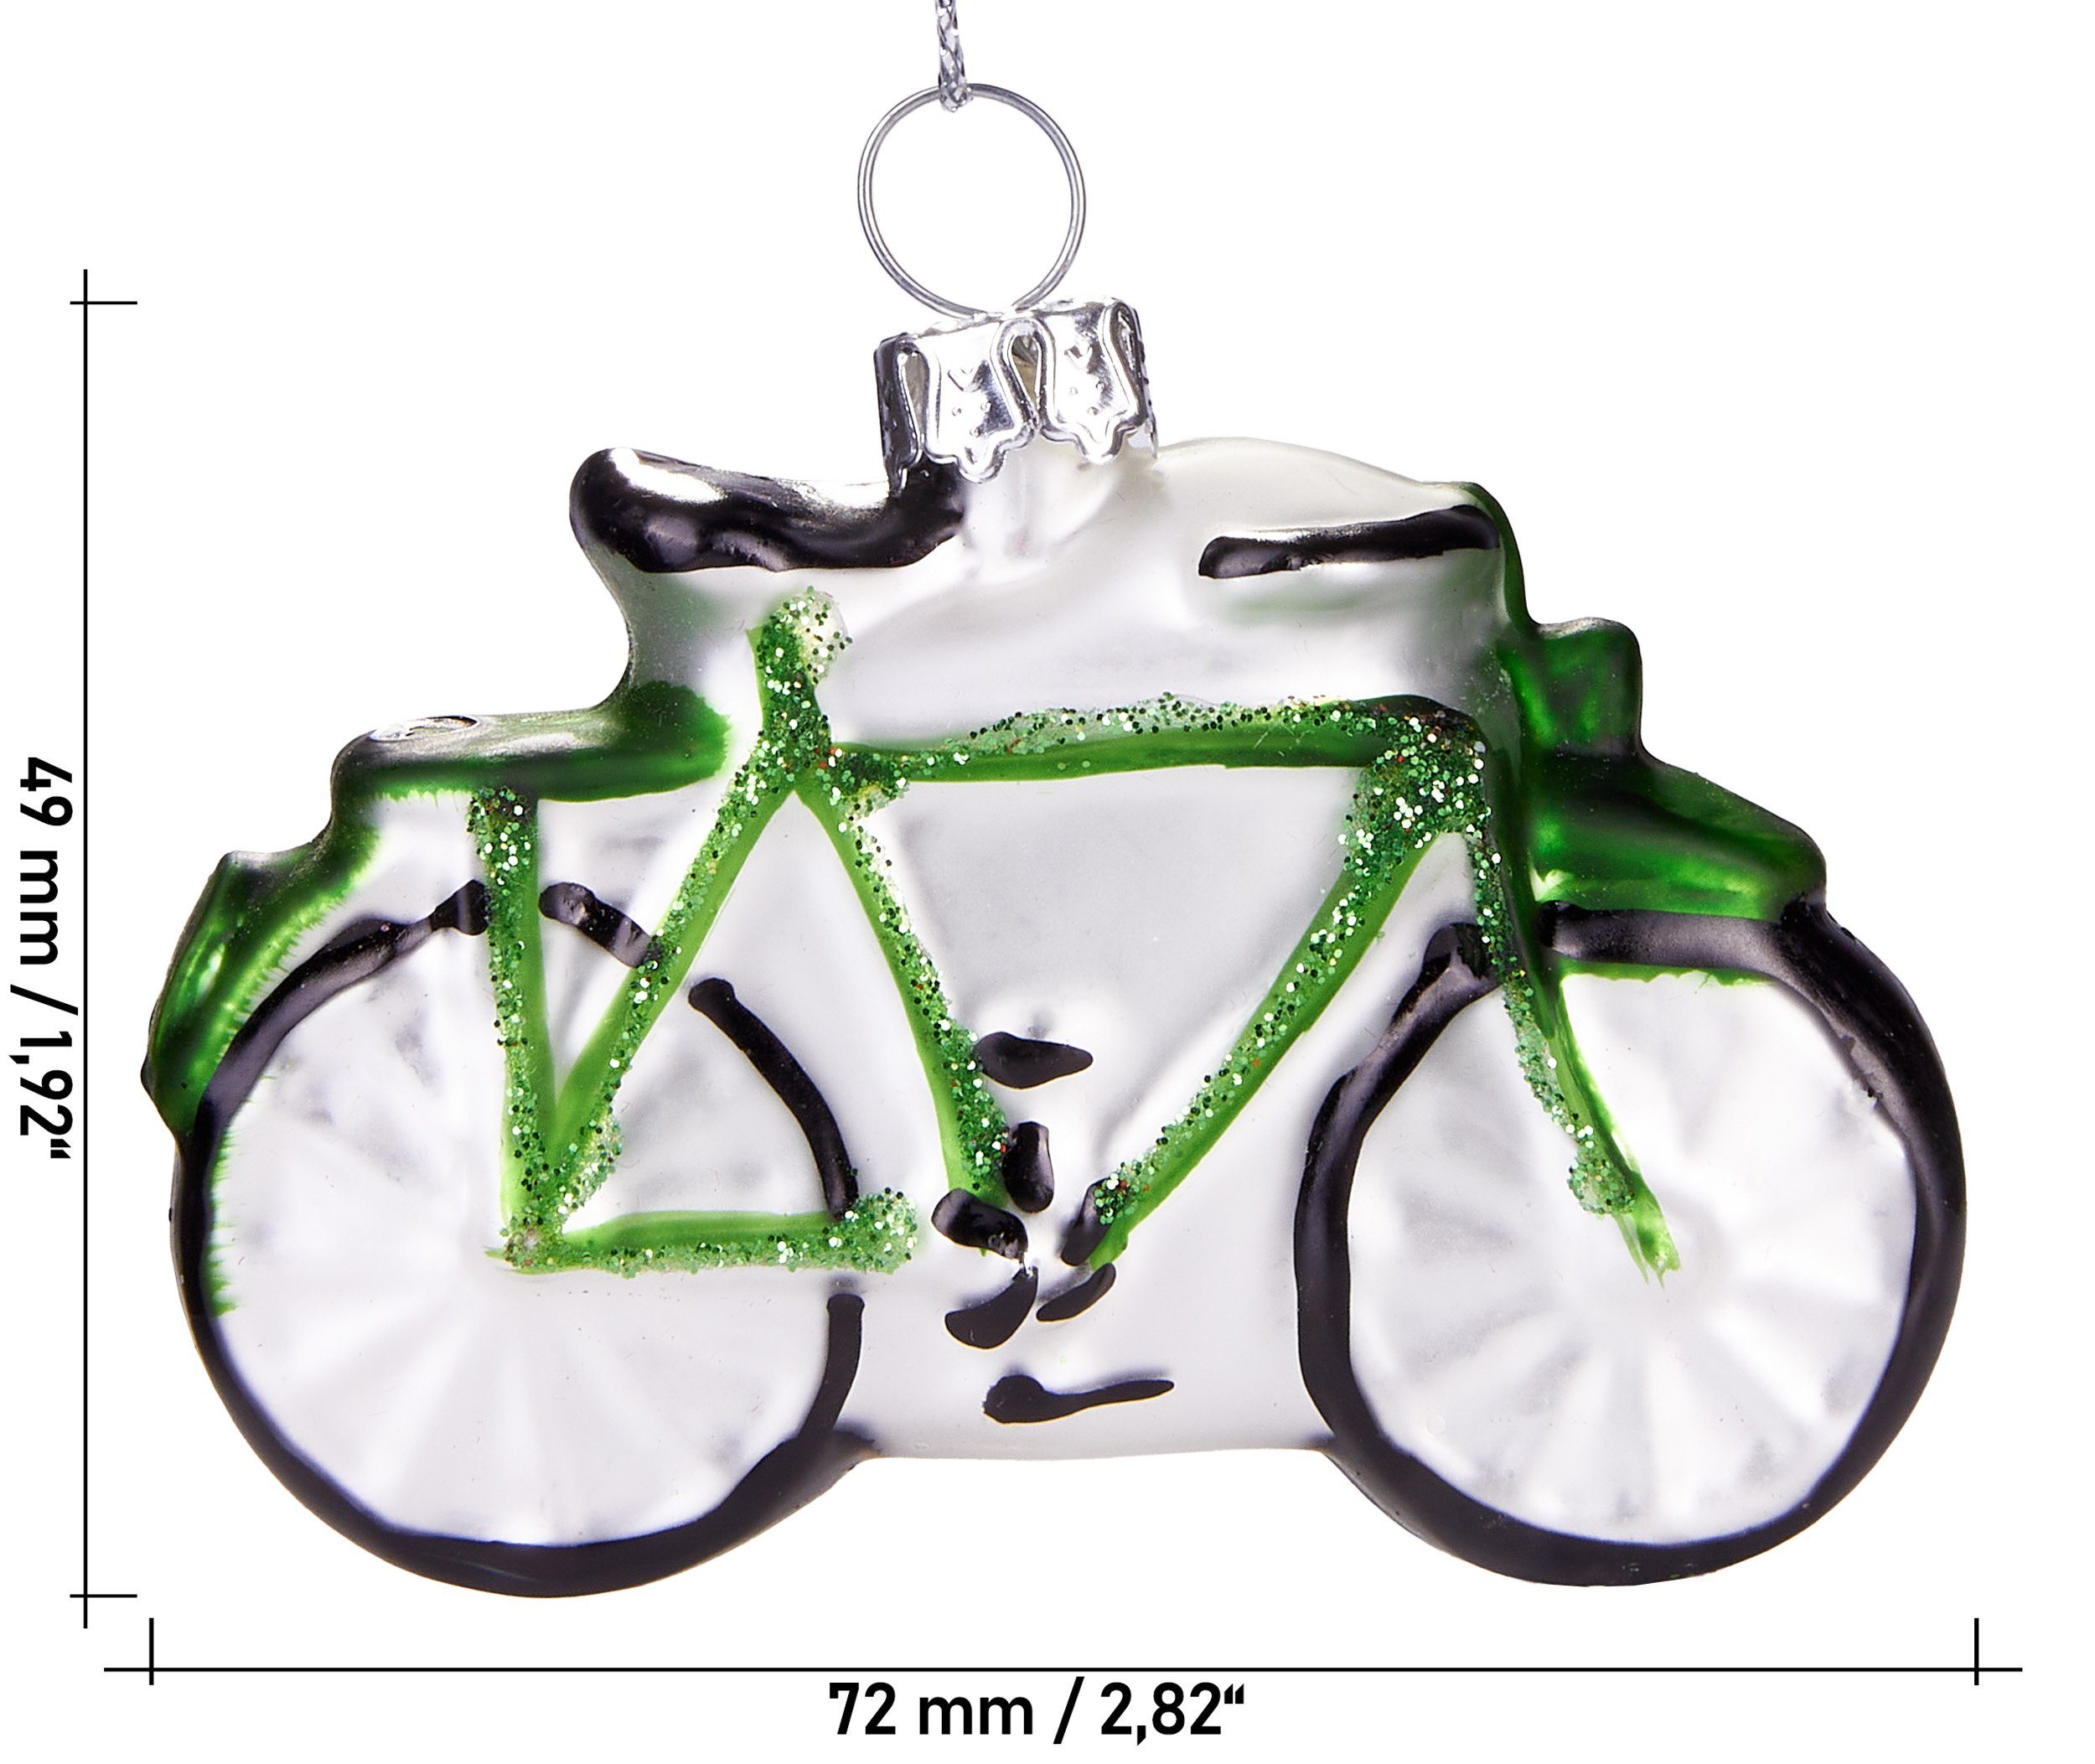 BRUBAKER Christbaumschmuck Mundgeblasene Weihnachtskugel Grünes - aus Glas, sportlicher Fahrrad, 7 Weihnachtsschmuck-Anhänger cm handbemalt